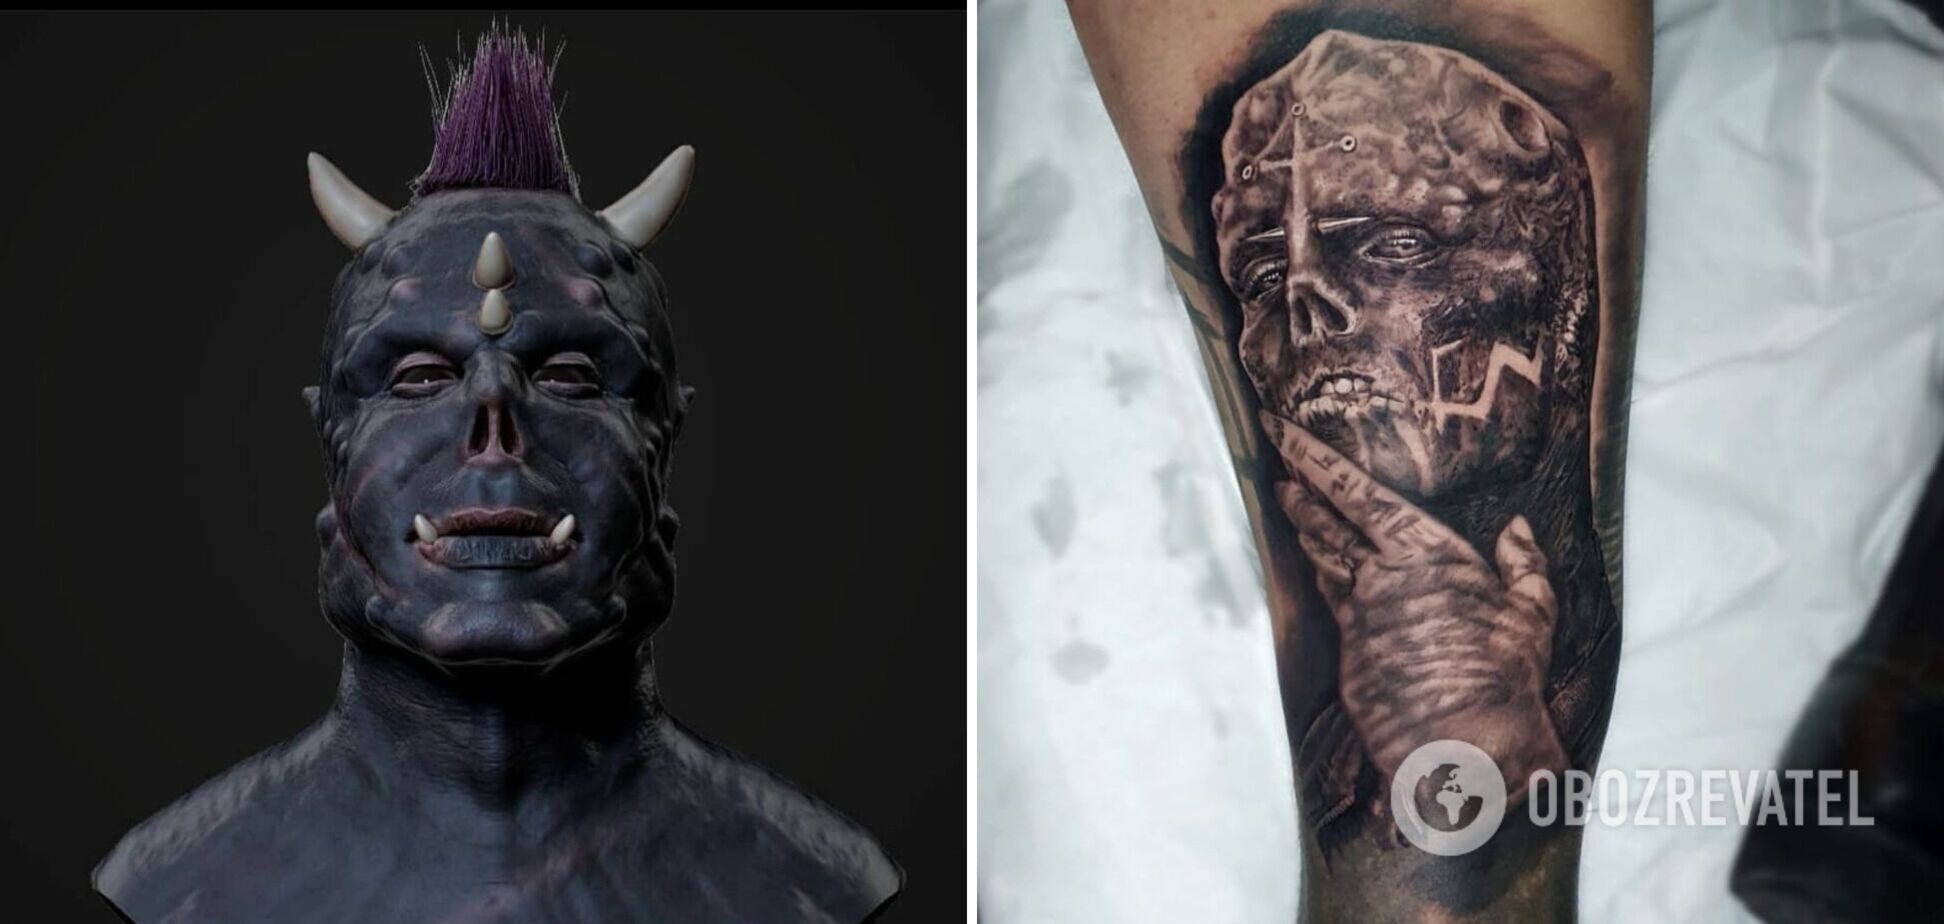 Рогатый 'Человек-сатана' сделал тату в честь 'Черного инопланетянина'. Фото безумцев